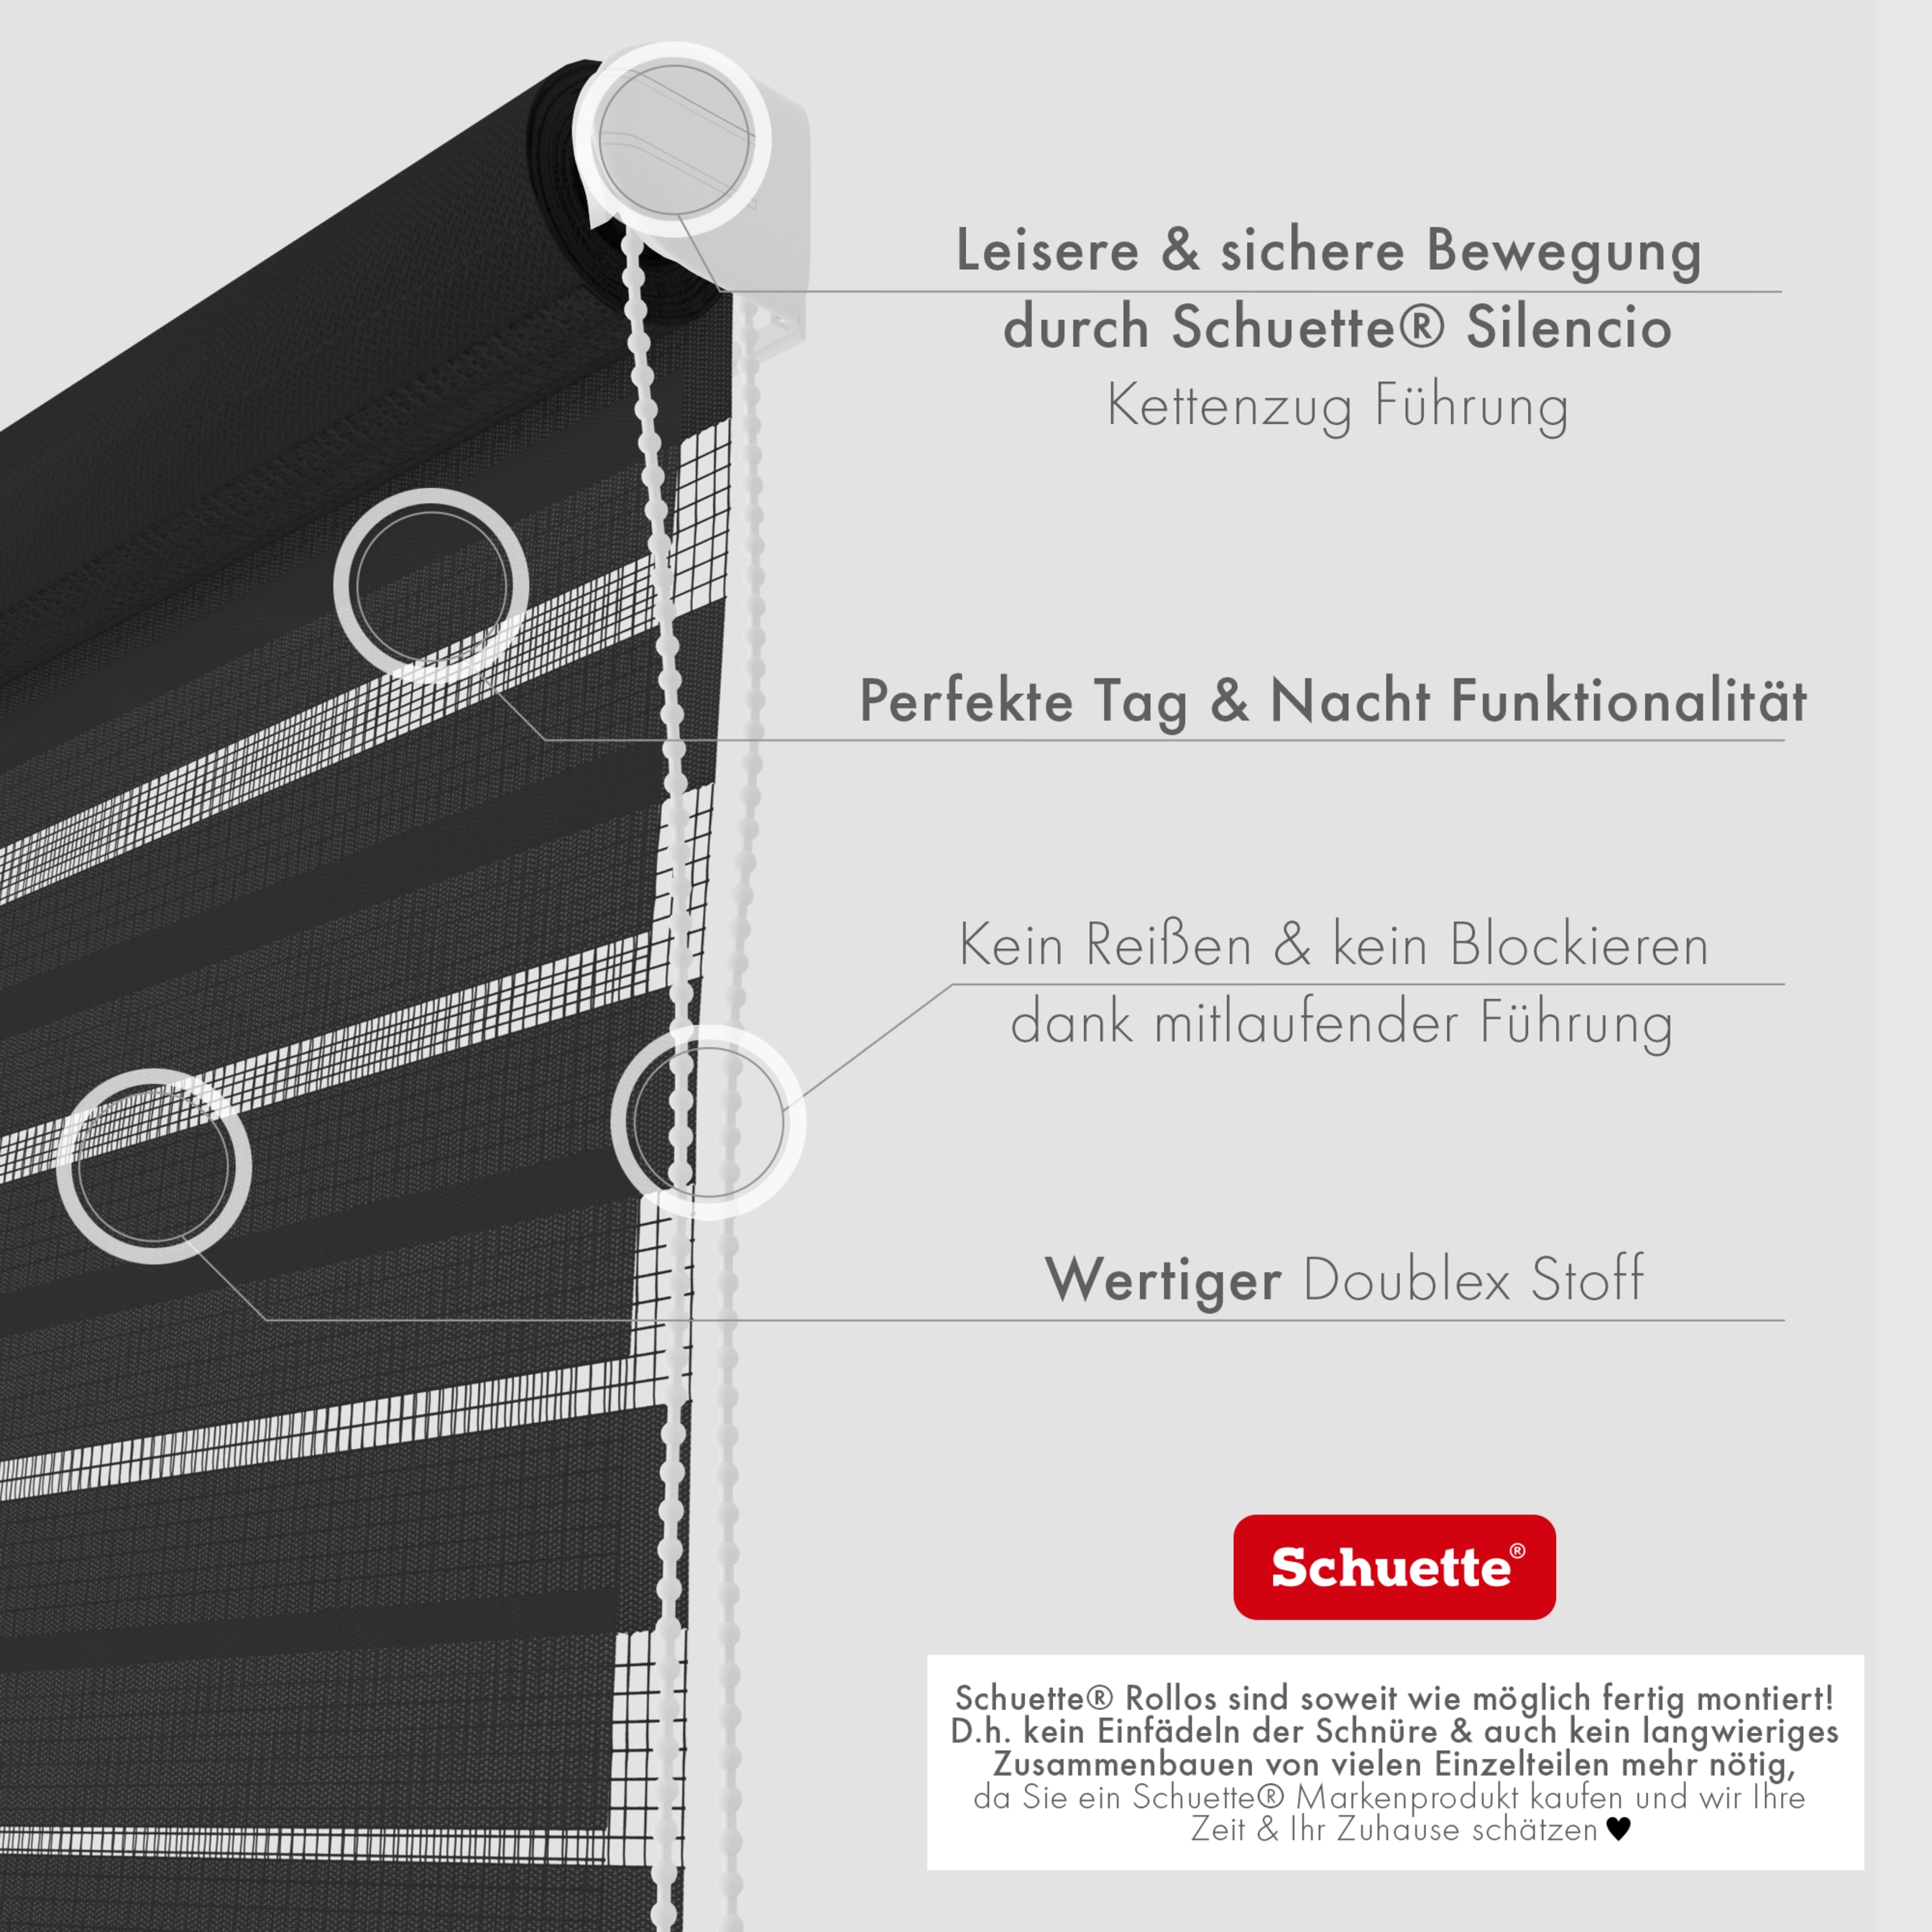 Schuette® Rollo ohne Bohren & mit Bohren 2in1 • Nacht Doppelrollo Kollektion: Black Flag (Schwarz) • Profilfarbe: Weiß